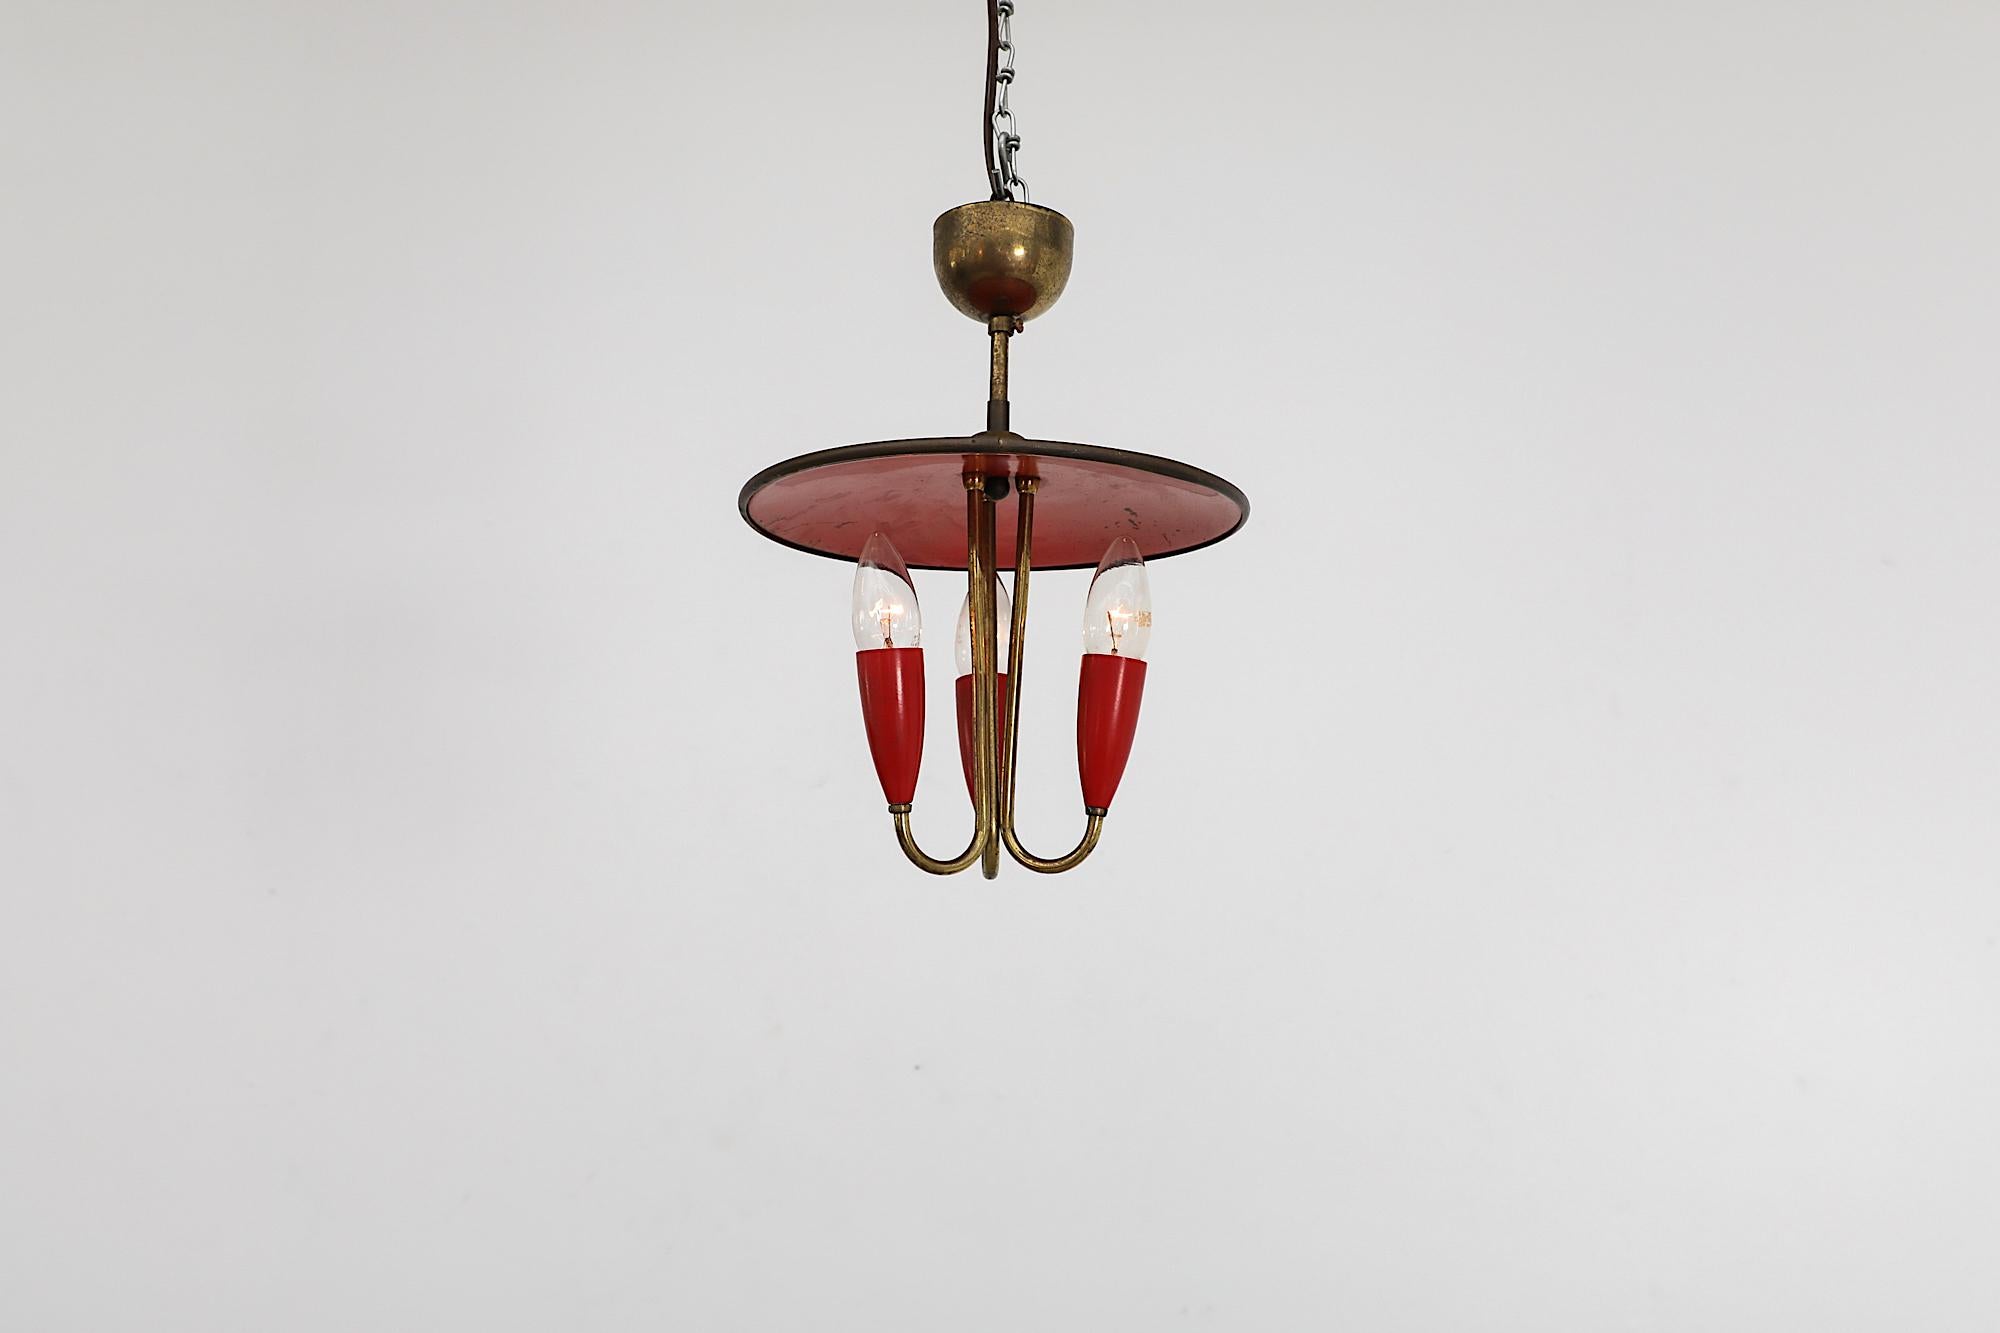 Magnifique lustre à trois ampoules en laiton de style Stilnovo avec un abat-jour en métal émaillé rouge et des supports de douilles rouges assortis. La lampe est équipée de douilles candélabres de l'UE. En état d'origine, avec une usure et une